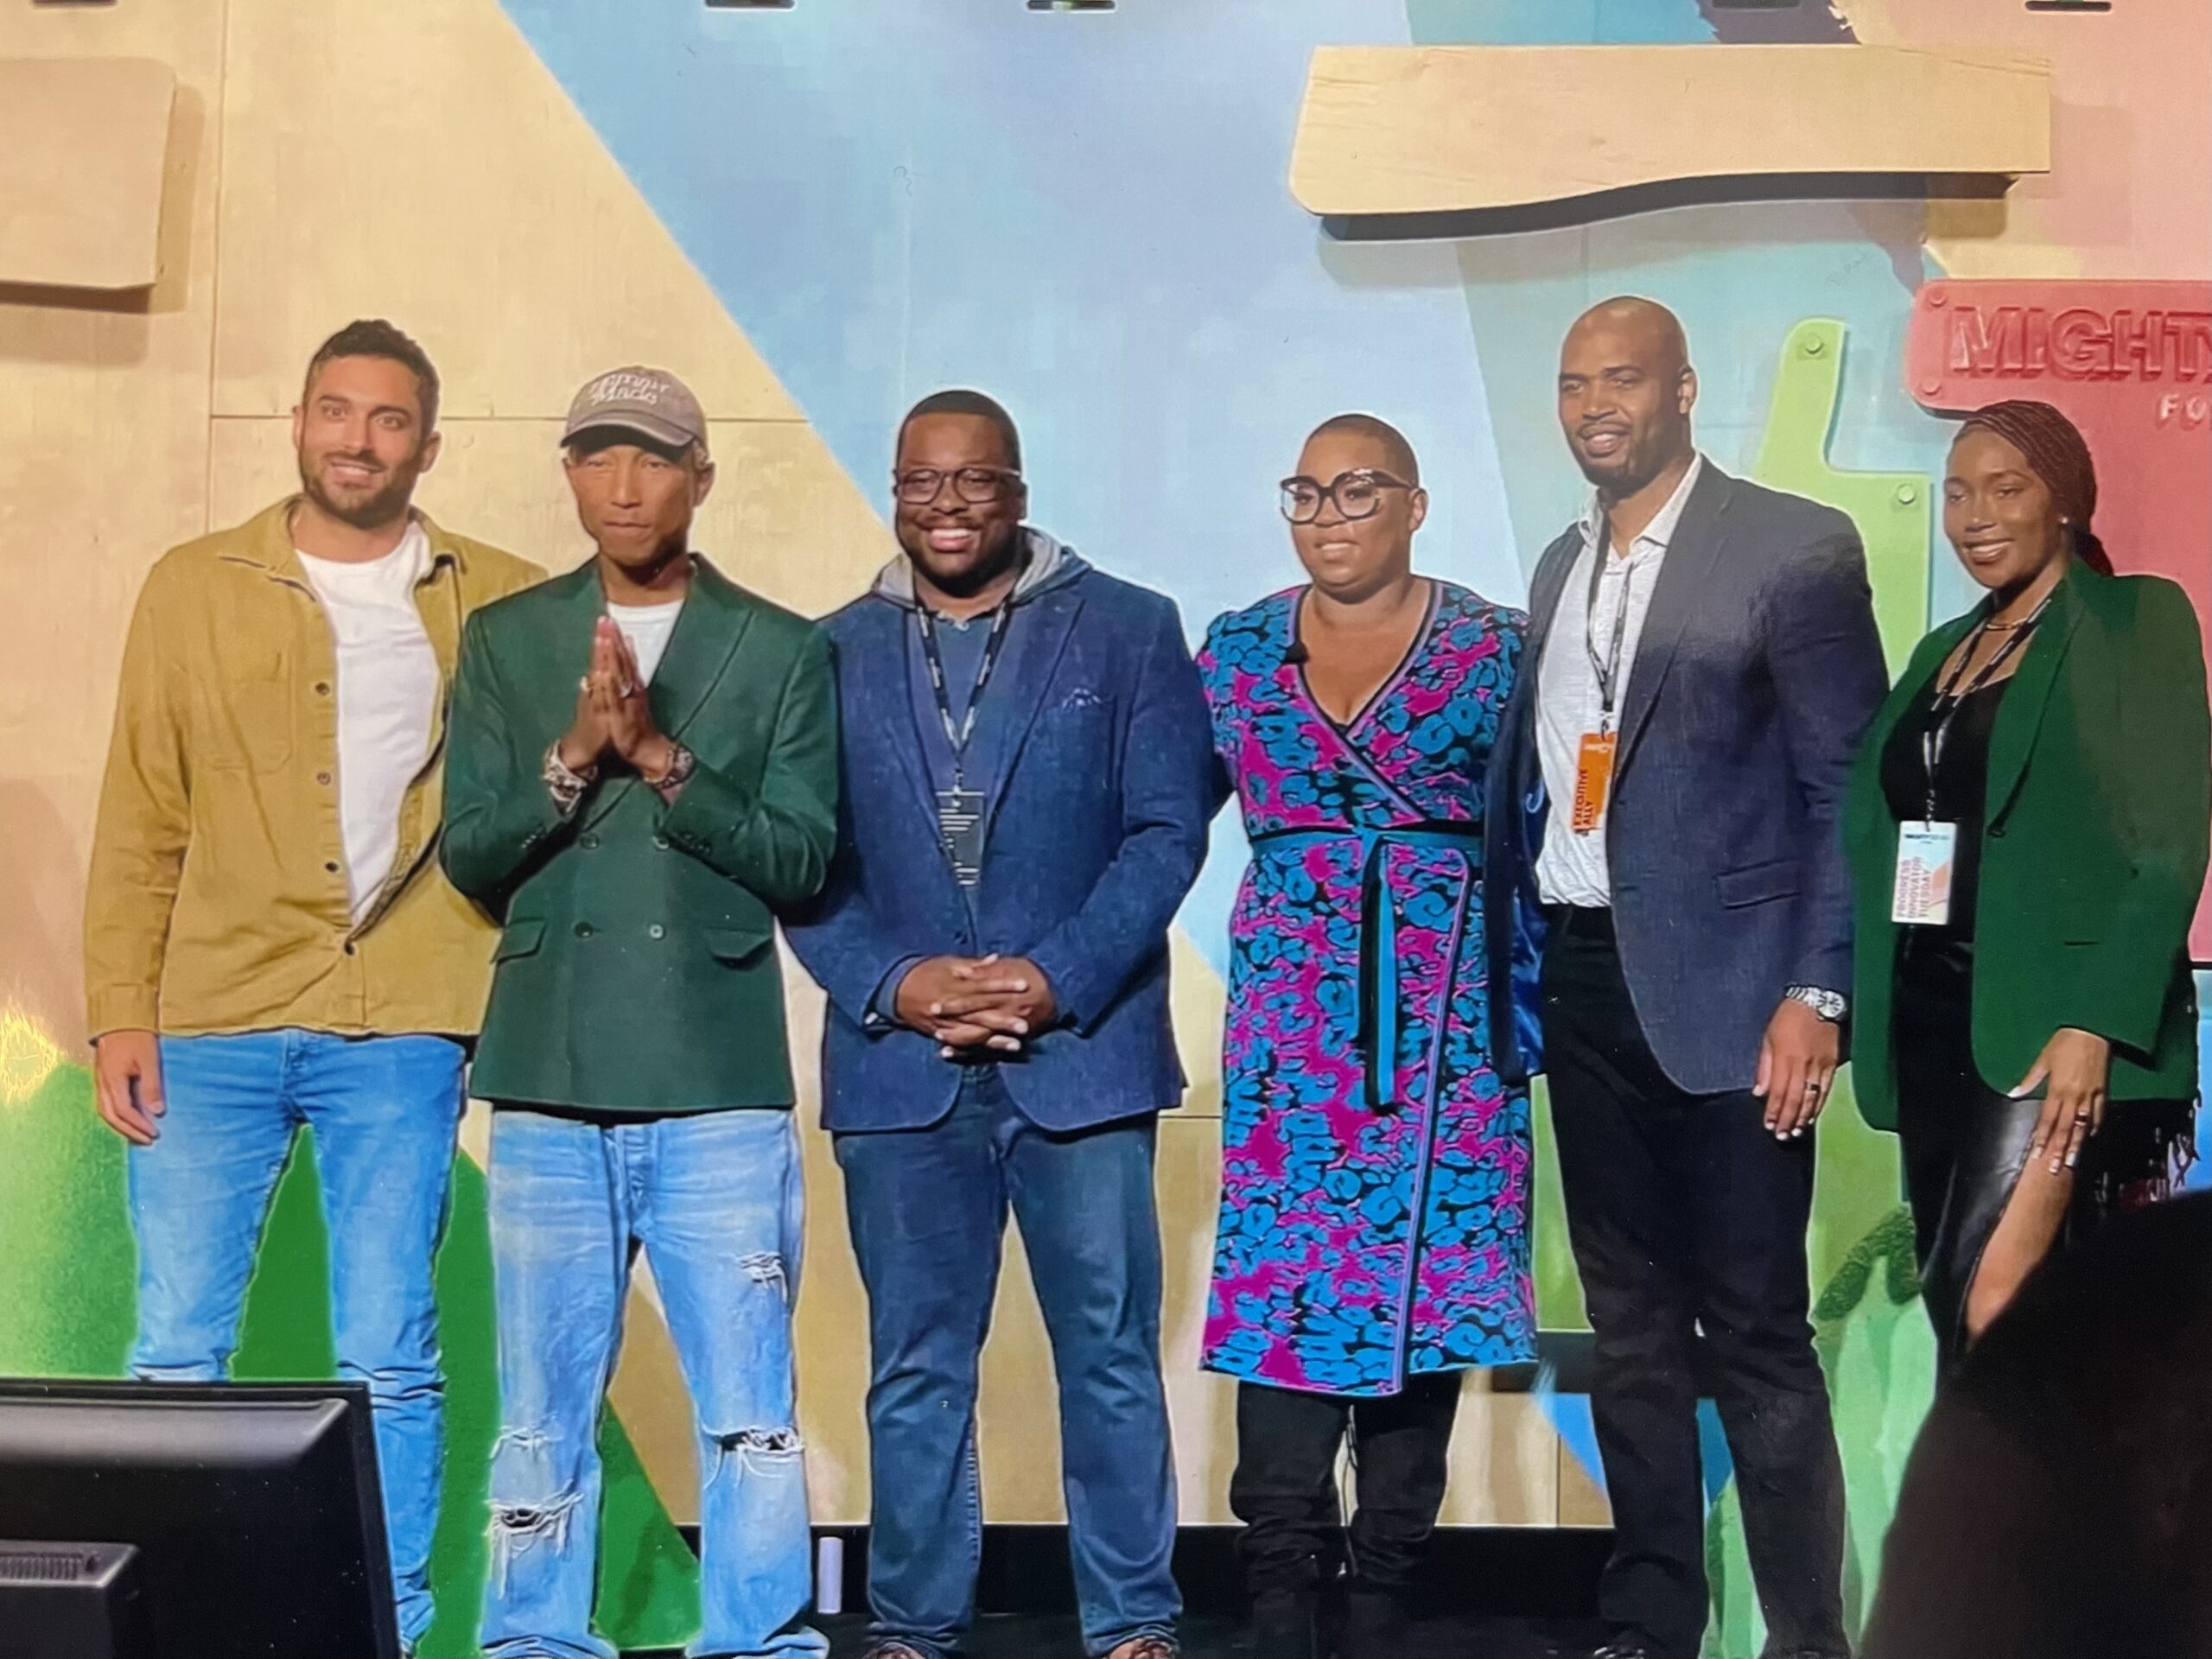 Detroit, somos 'muy ambiciosos': Felecia Hatcher, directora ejecutiva de Black Ambition de Pharrell Williams, lidera el evento del sábado de Black Tech | La crónica de Michigan